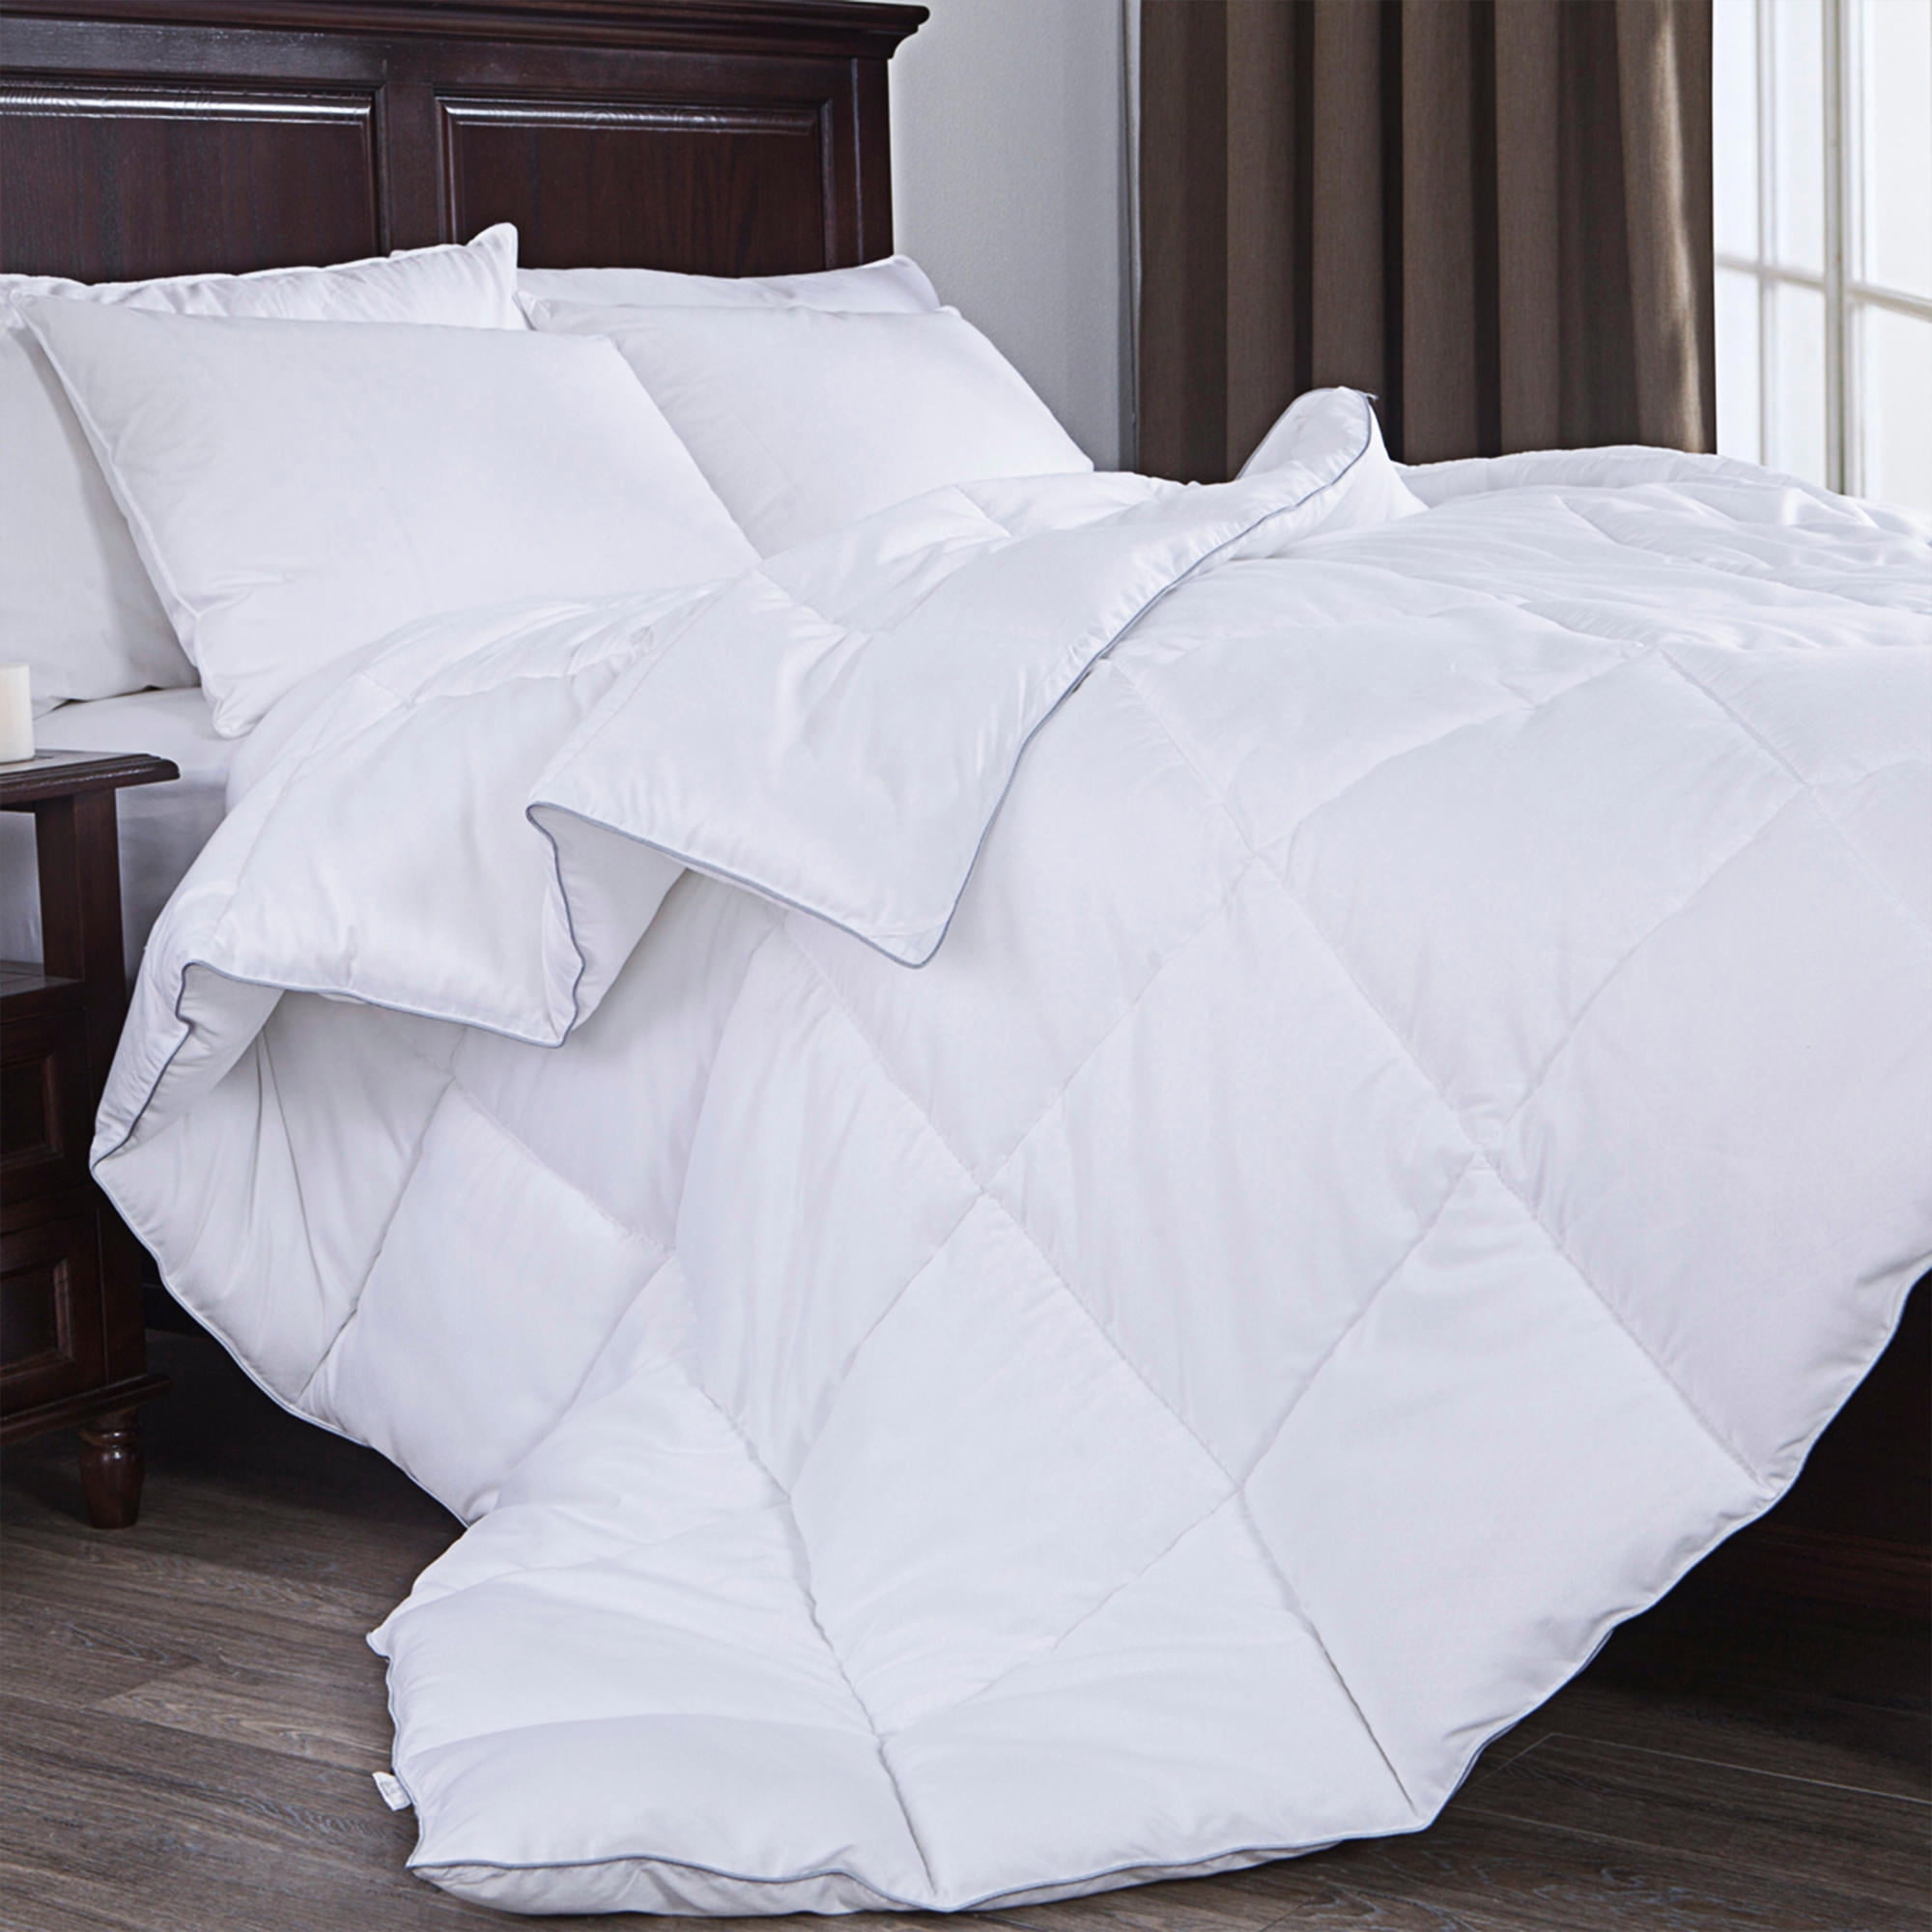 Puredown Down Alternative Comforter, What Size Insert For Full Queen Duvet